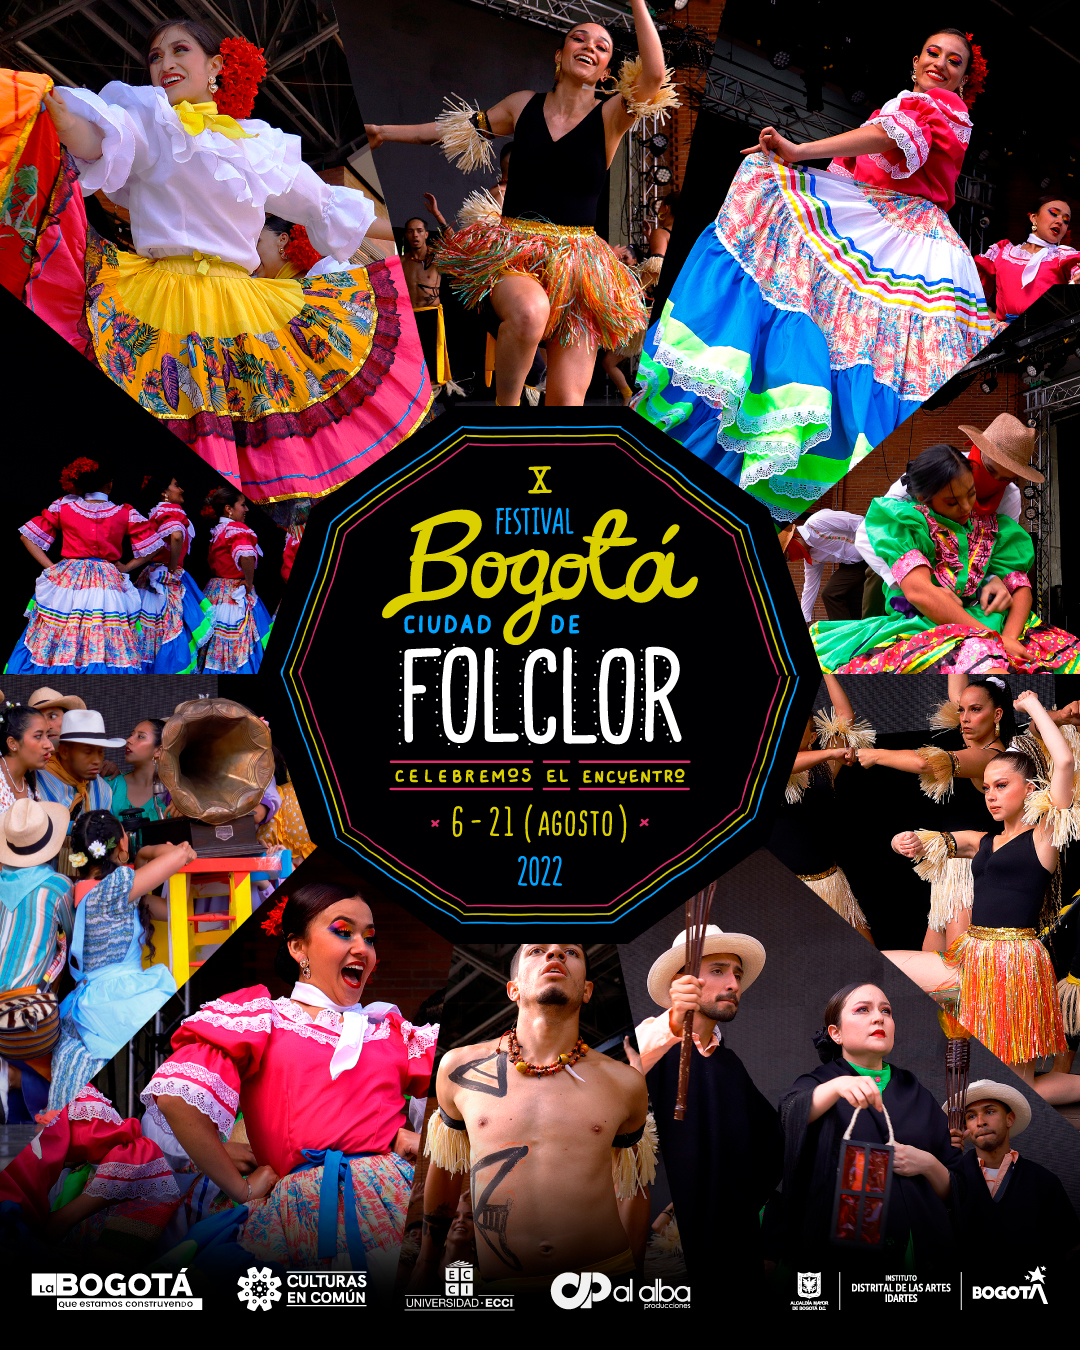 X Festival Bogotá Ciudad de Folclor